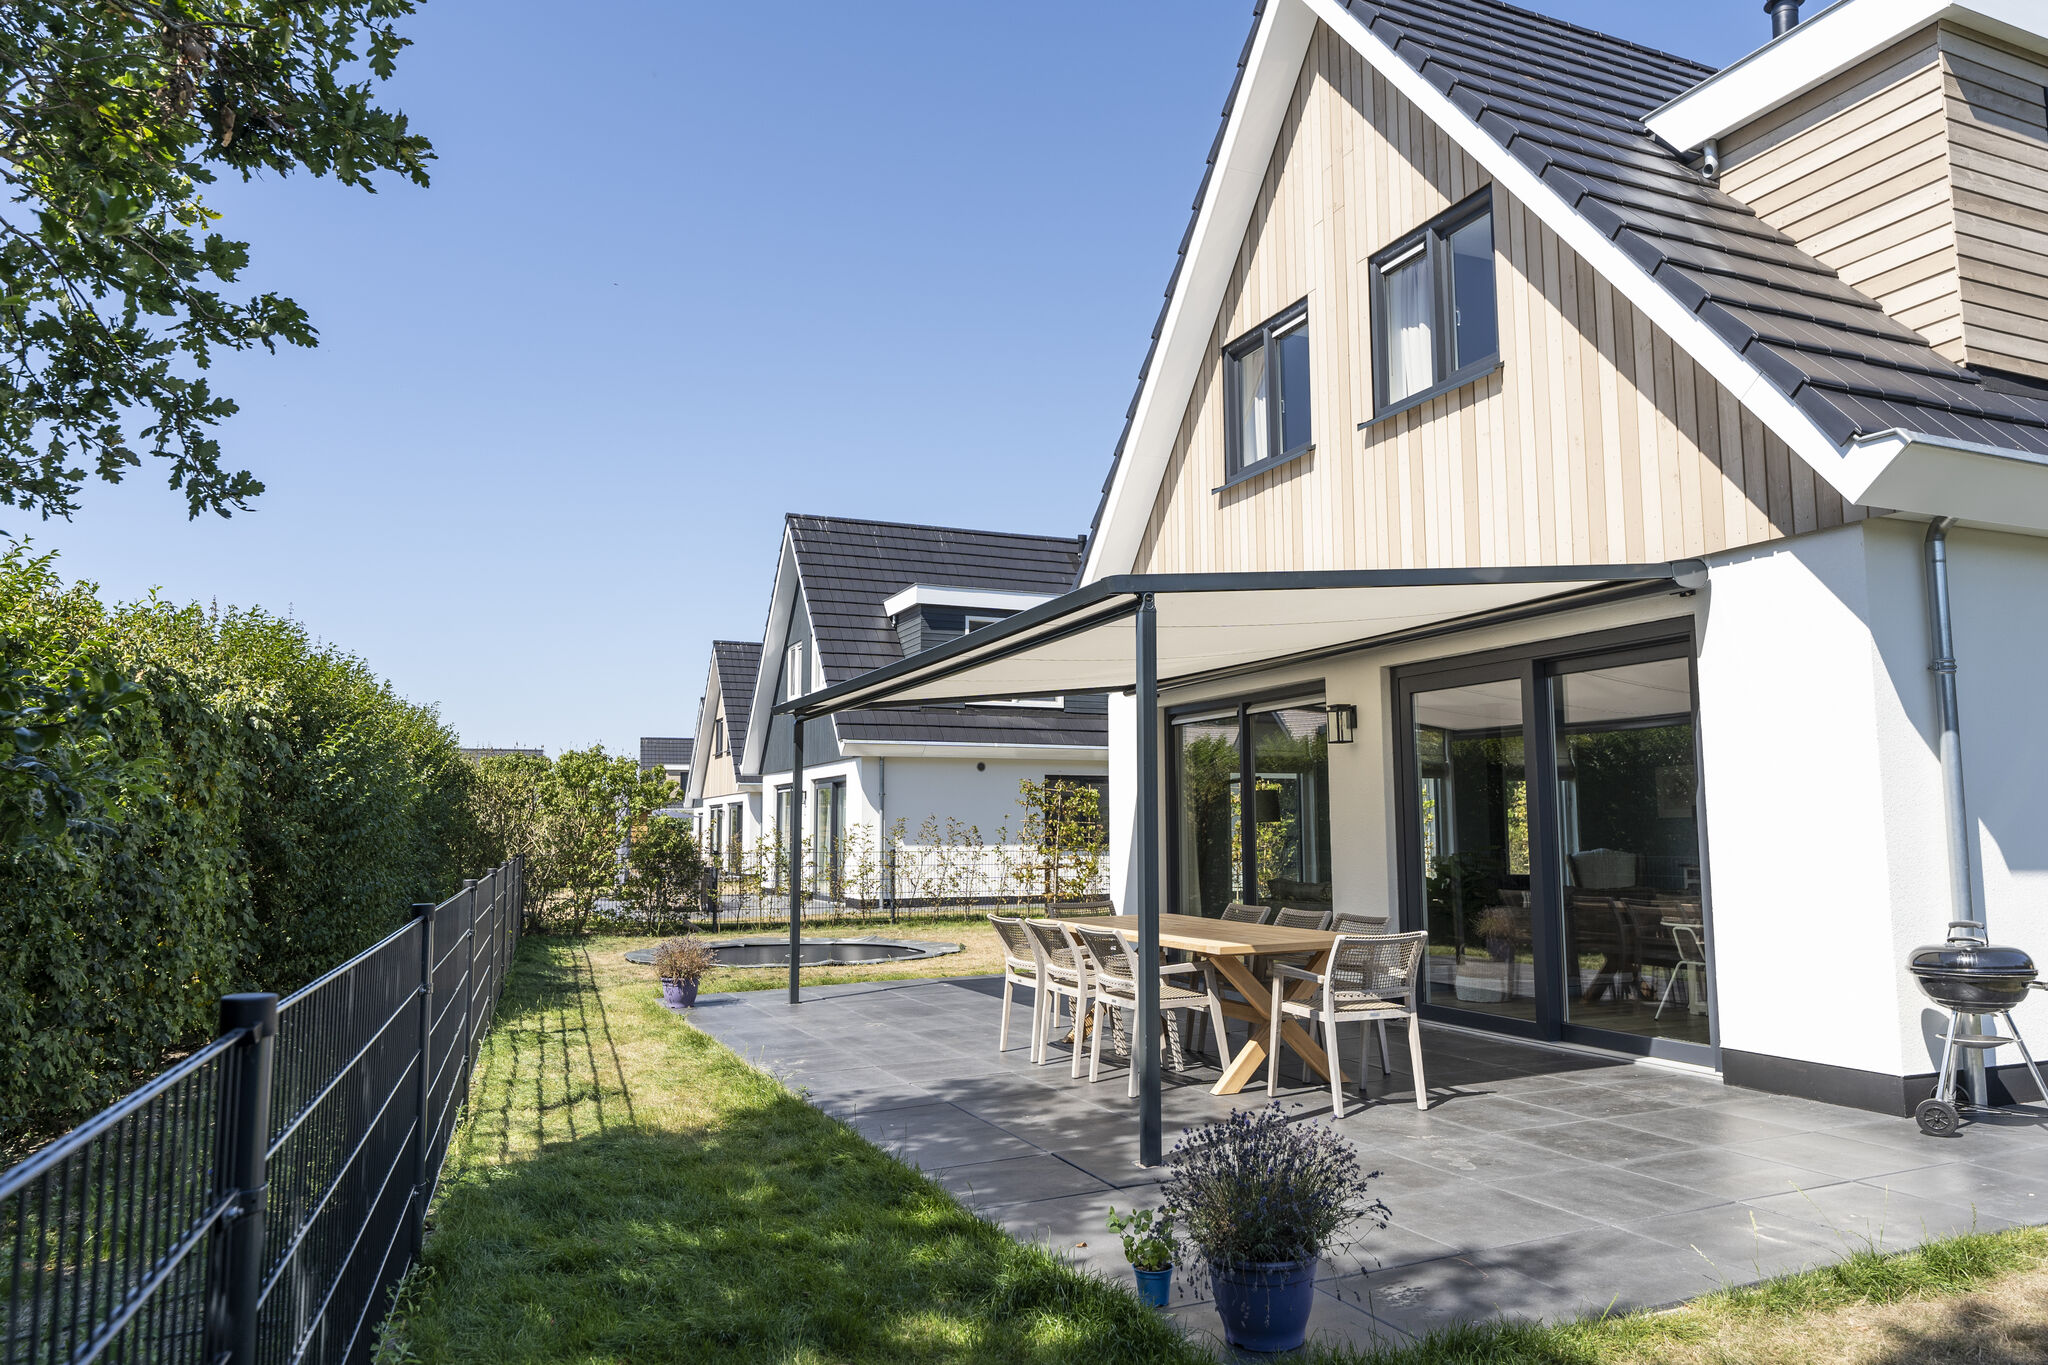 Beautiful Villa in De Koog Texe with Fenced Garden